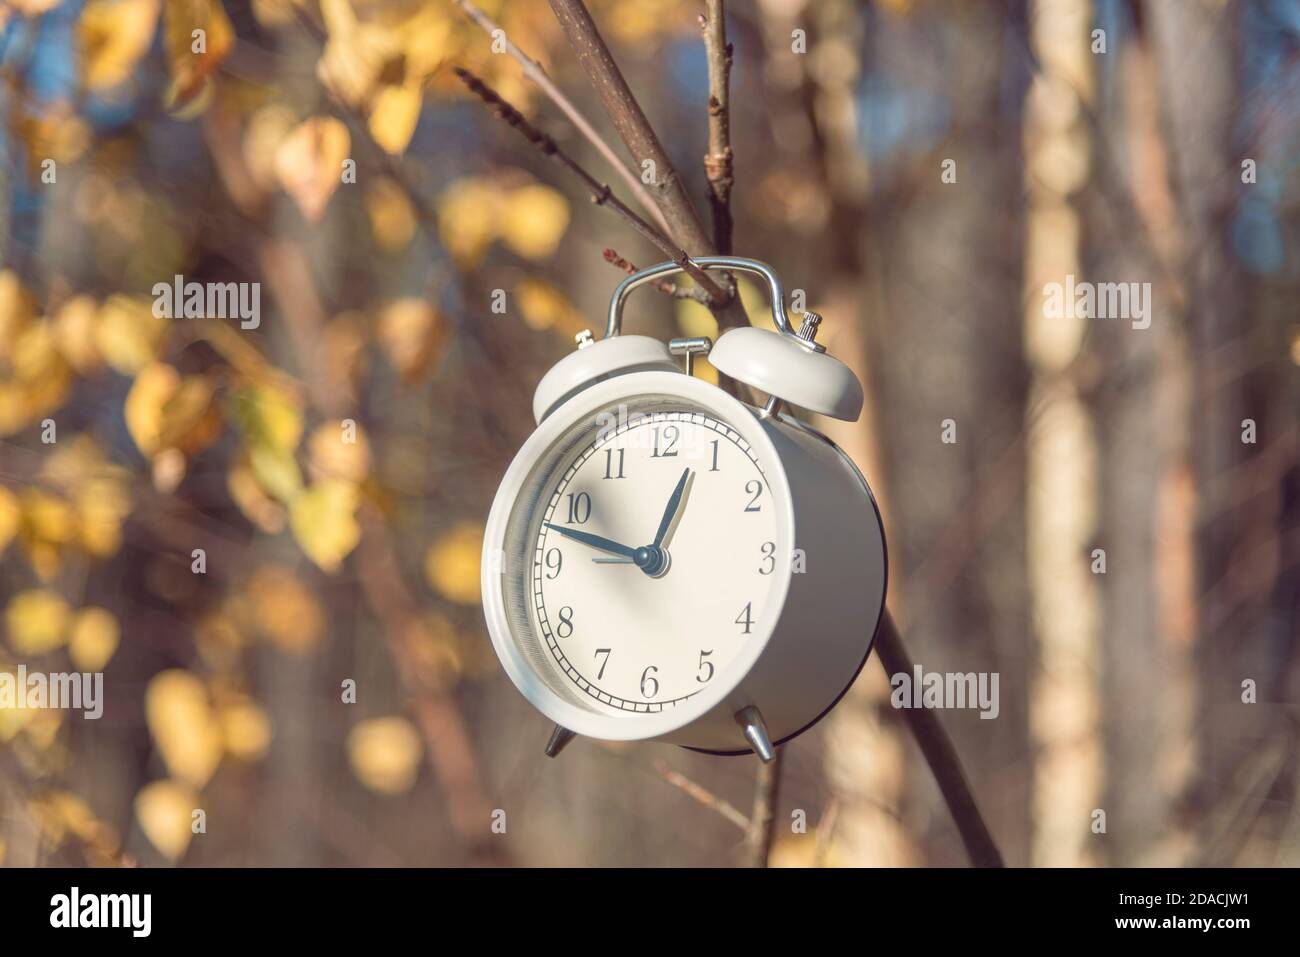 Weißer Wecker hängt am sonnigen Herbsttag am Busch im Wald. Konzept der  Sommerzeit Stockfotografie - Alamy